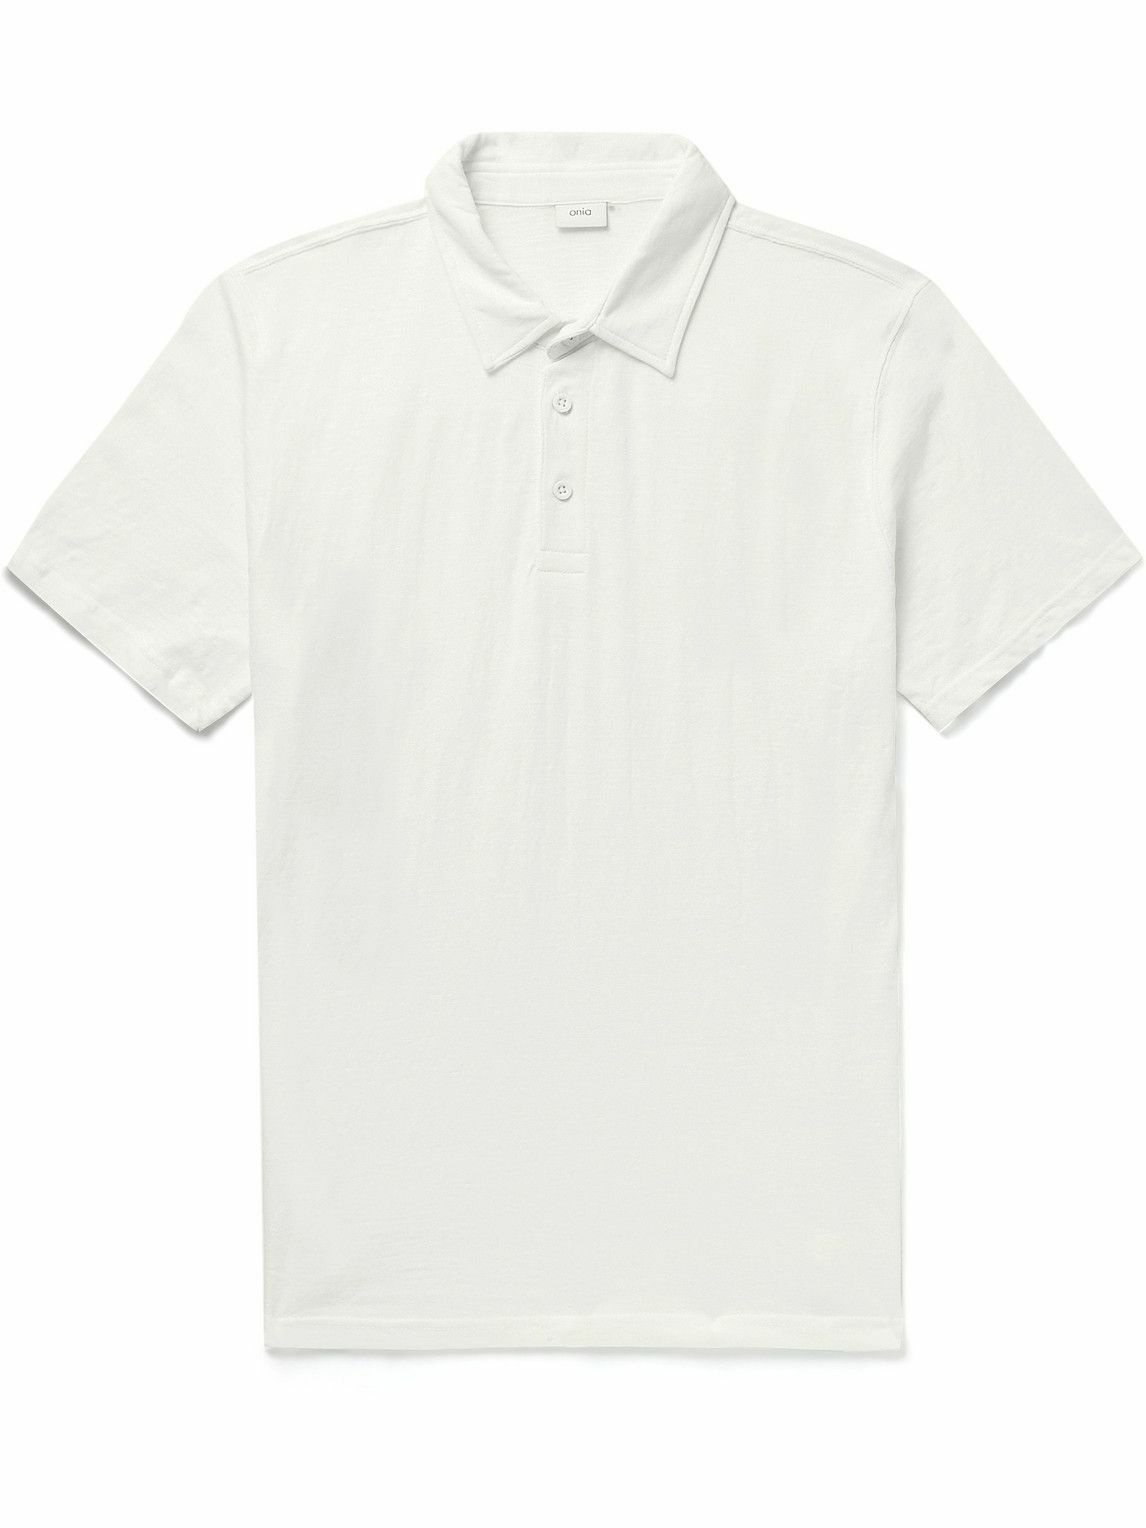 Onia - Slub Cotton-Jersey Polo Shirt - White Onia